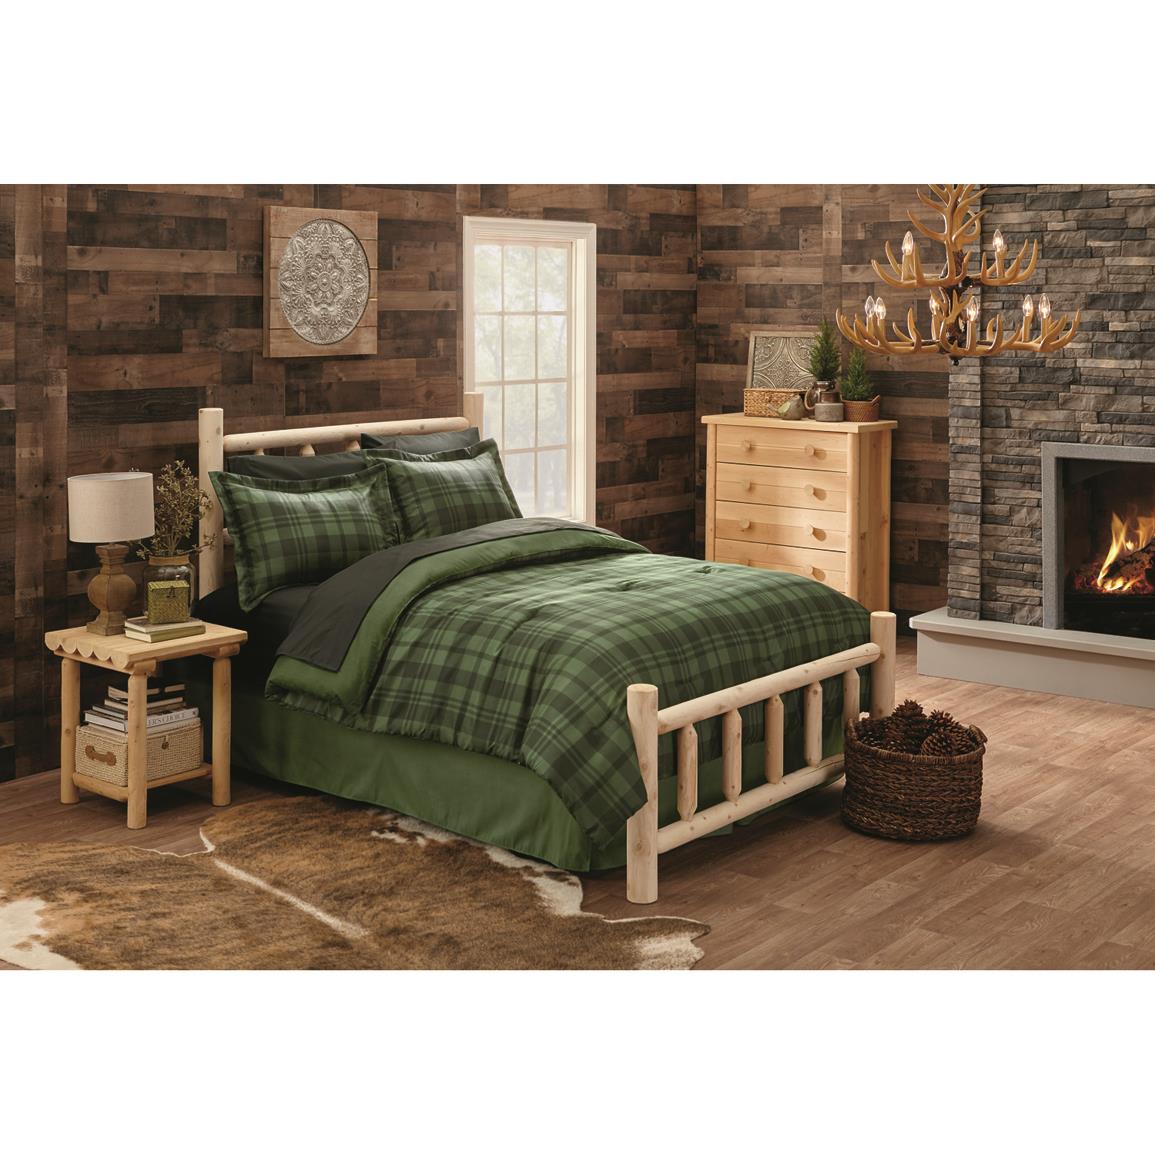 CASTLECREEK Cedar Log Bed, King